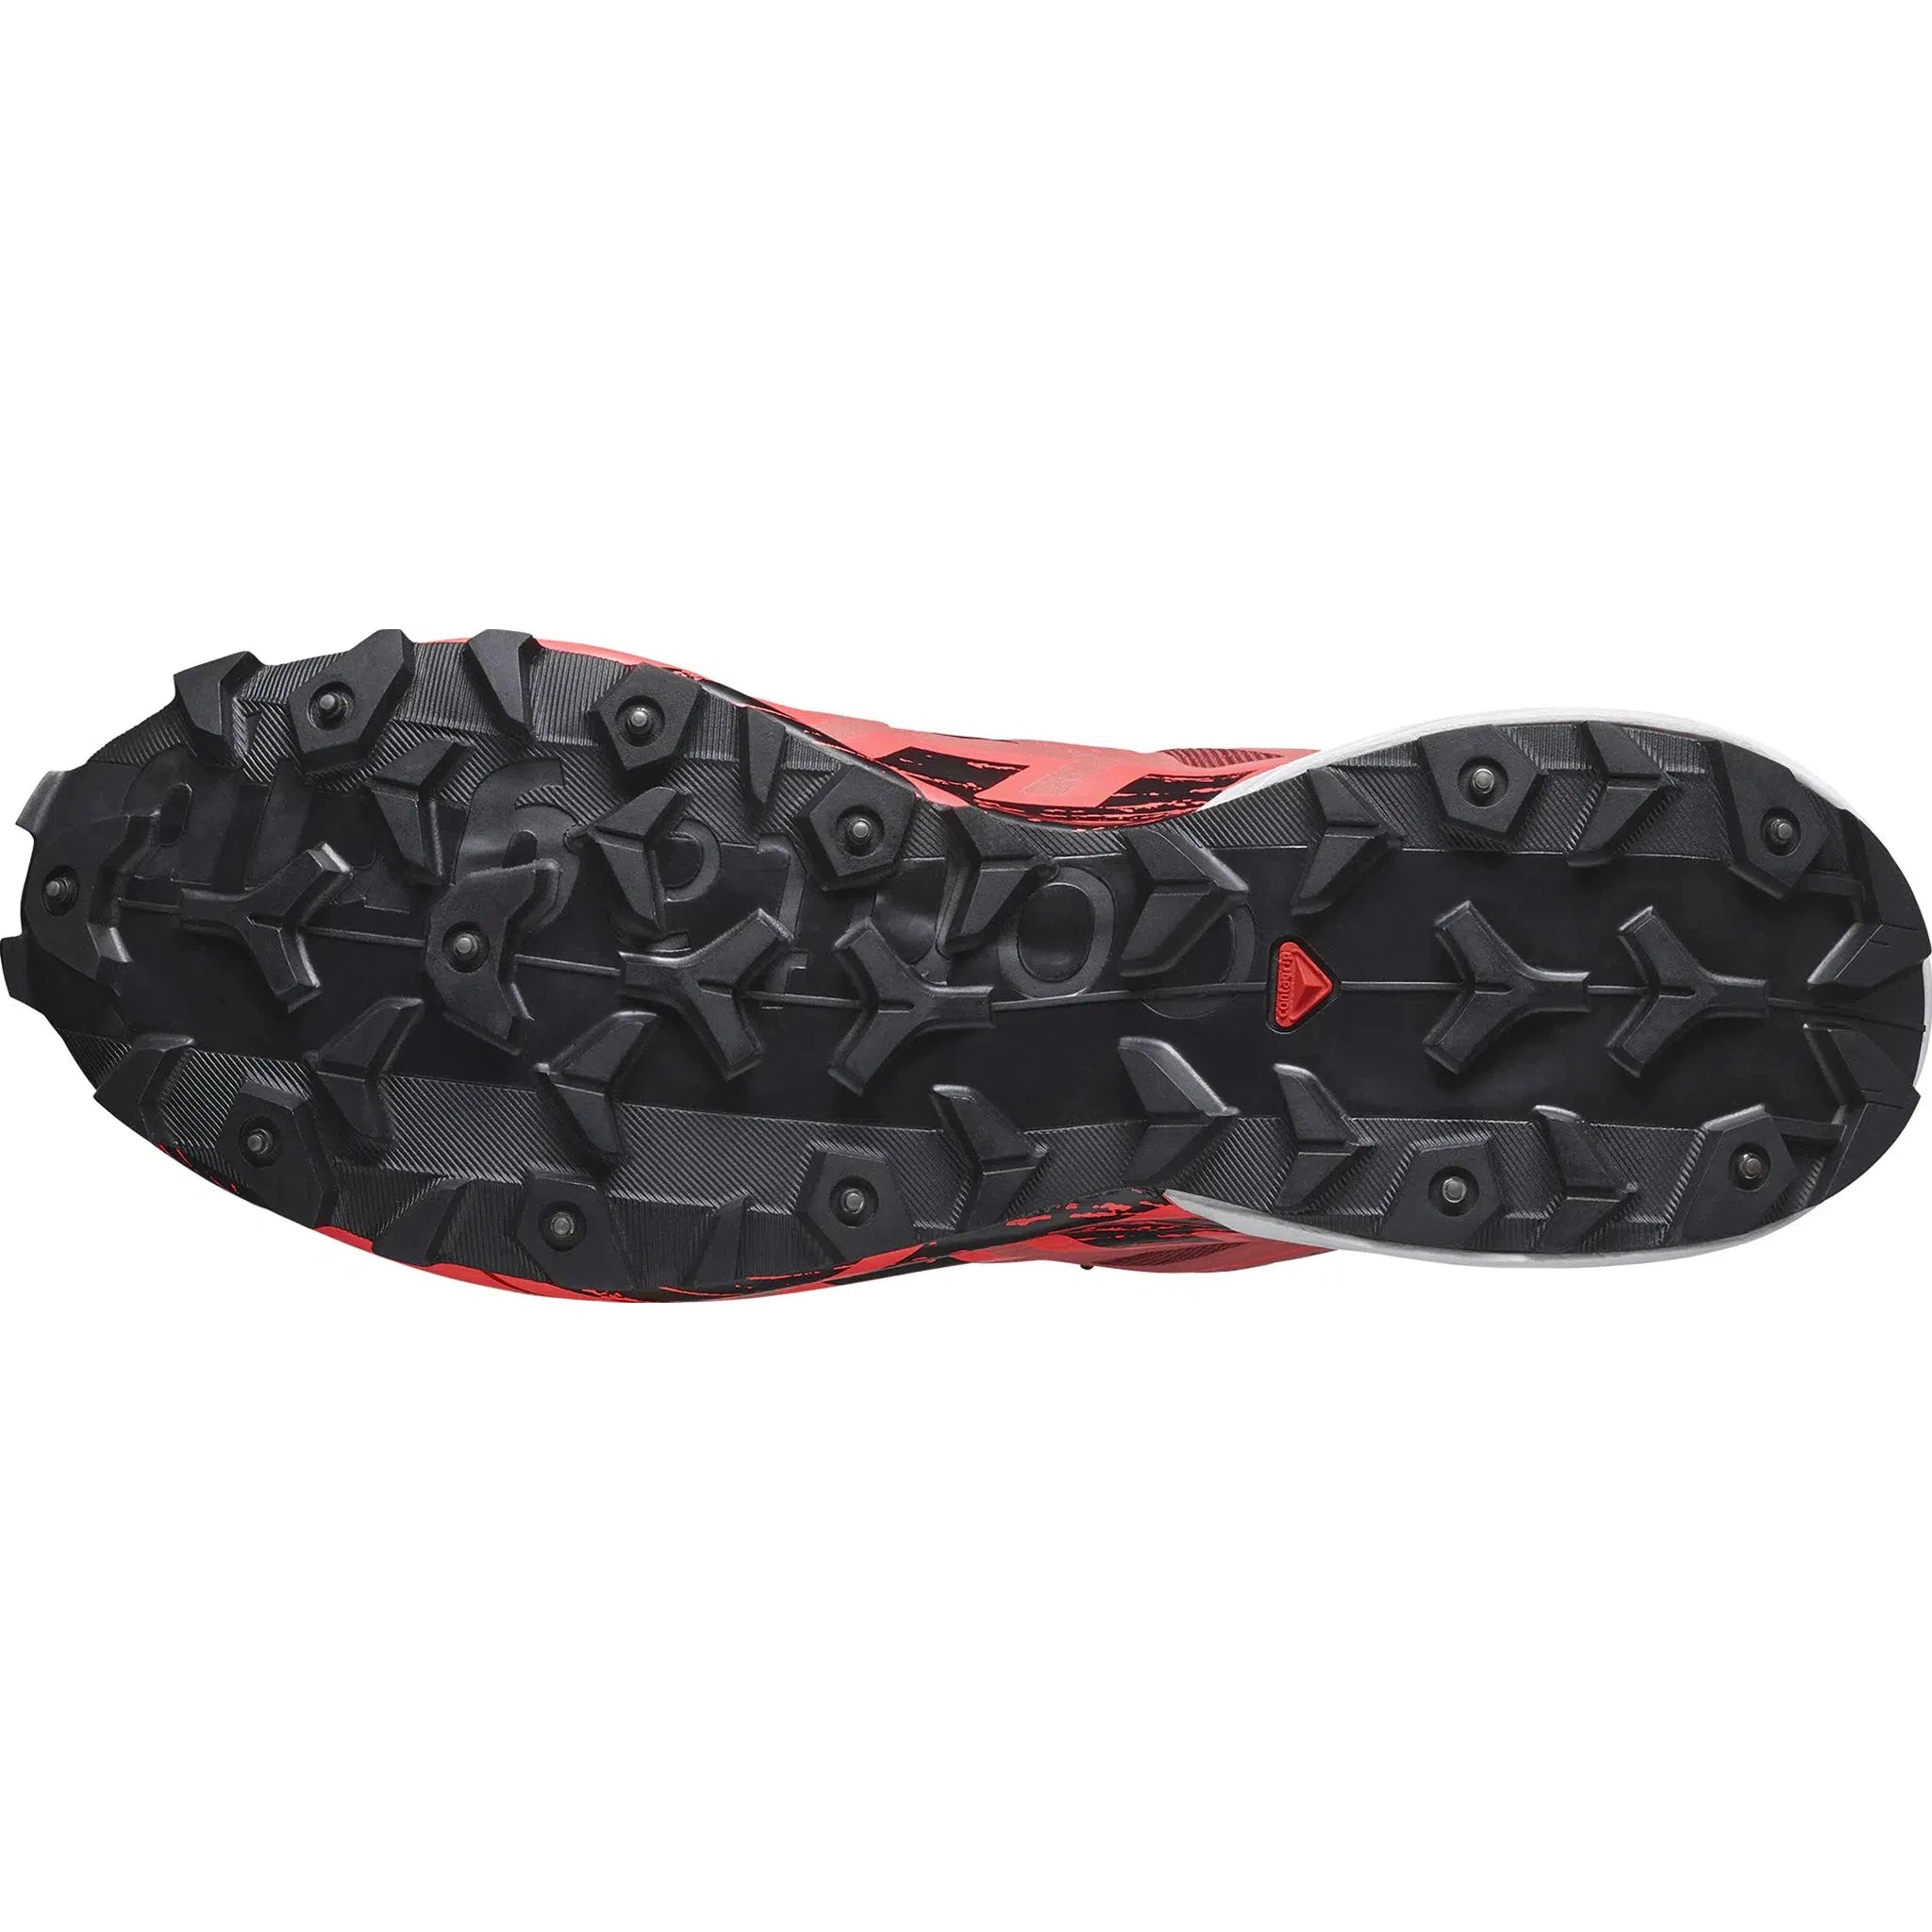 Men's Spikecross 6 GTX Trail Running Shoes